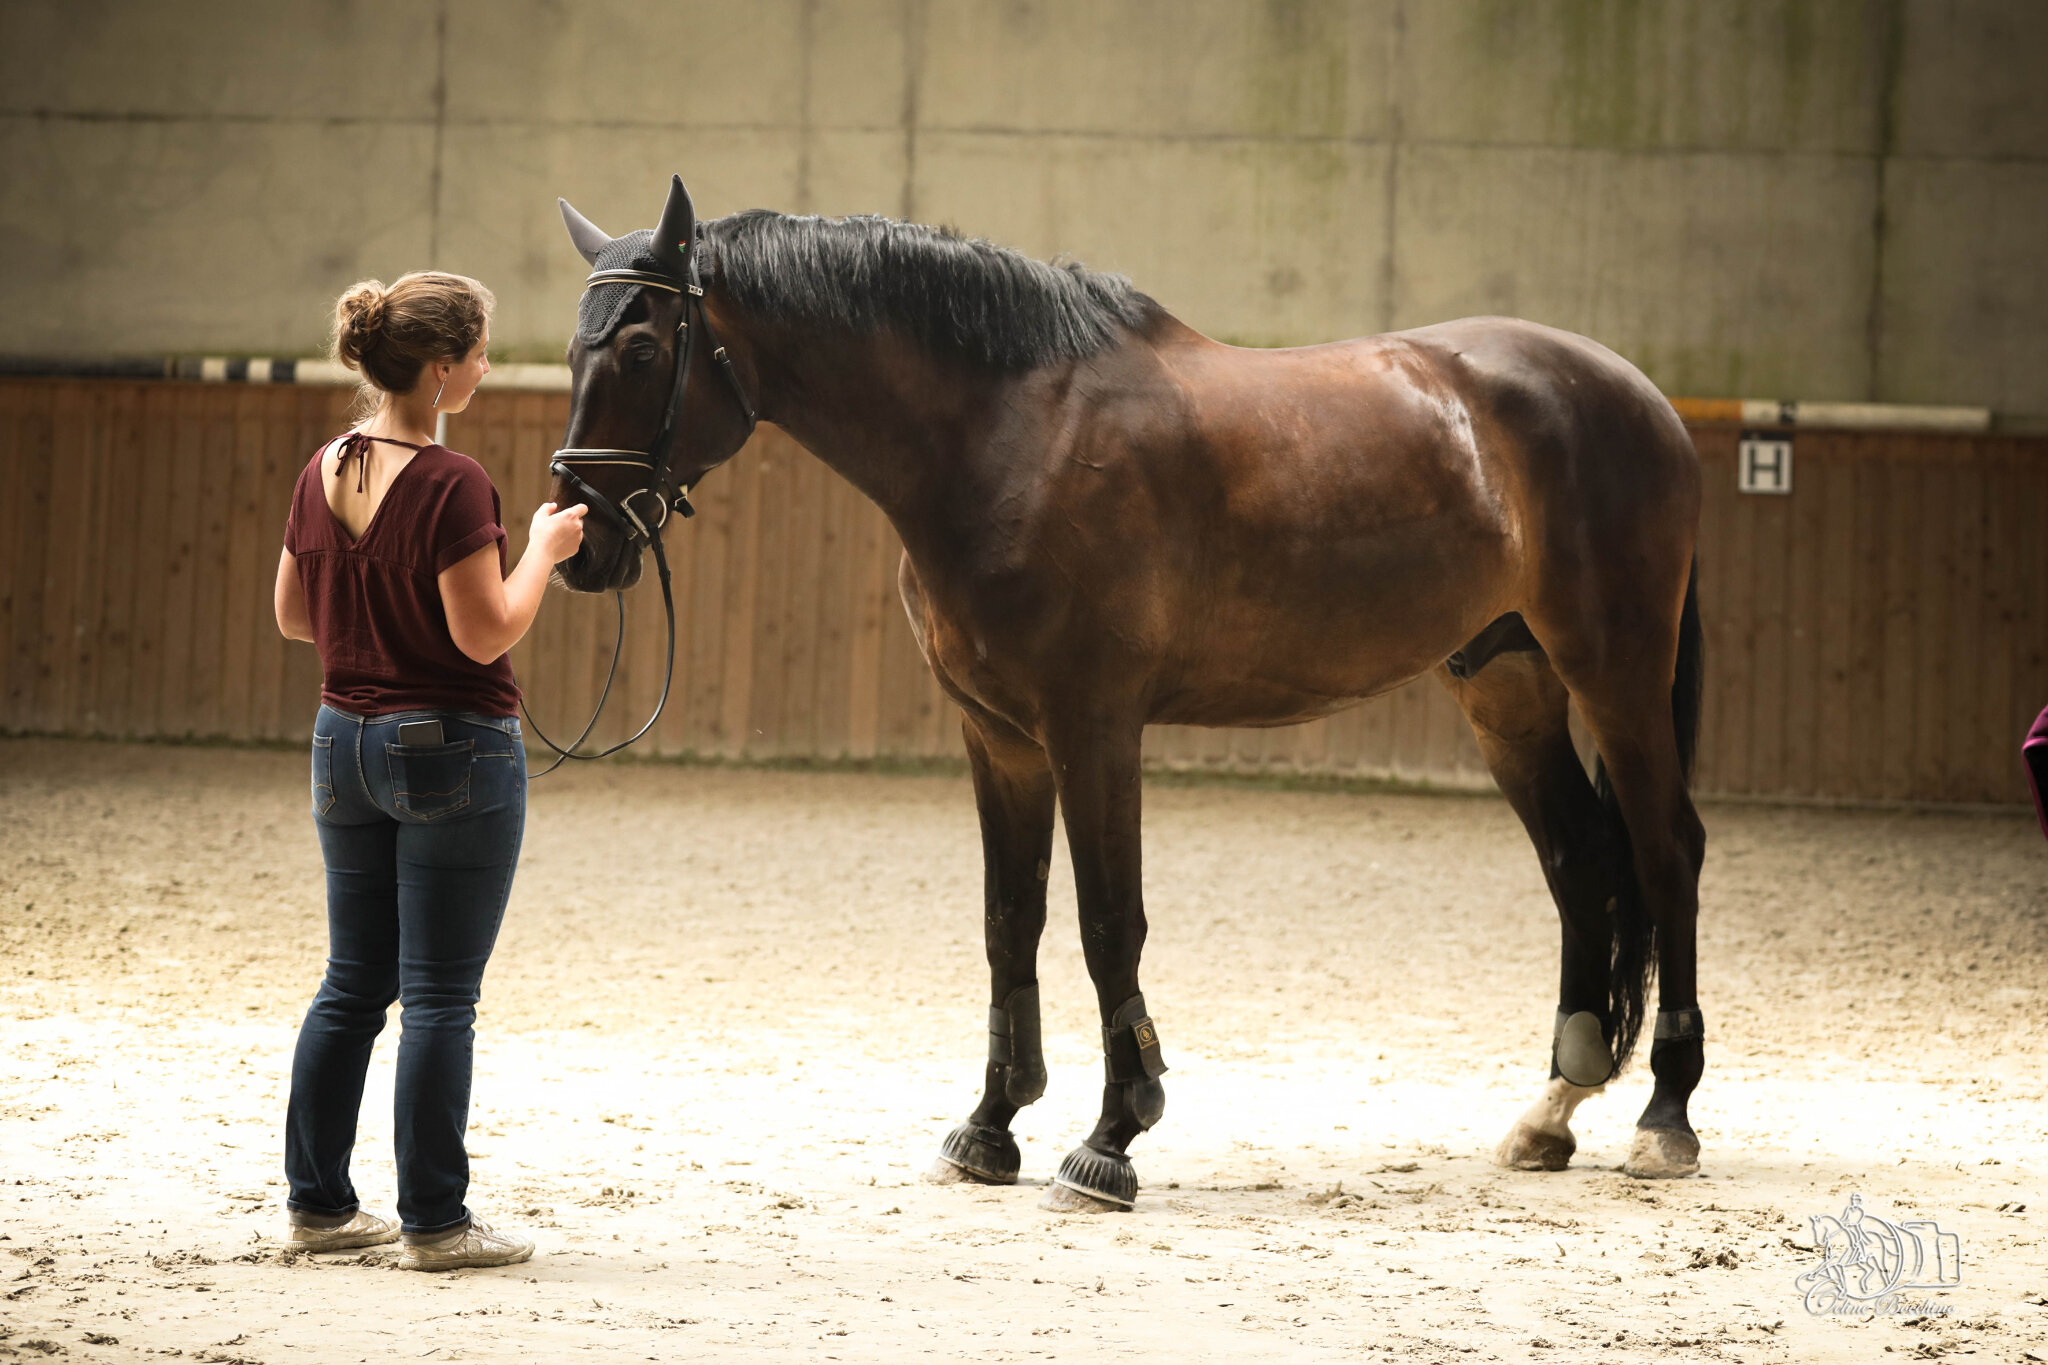 L'importance de la selle pour le bien-être du cheval – Blog